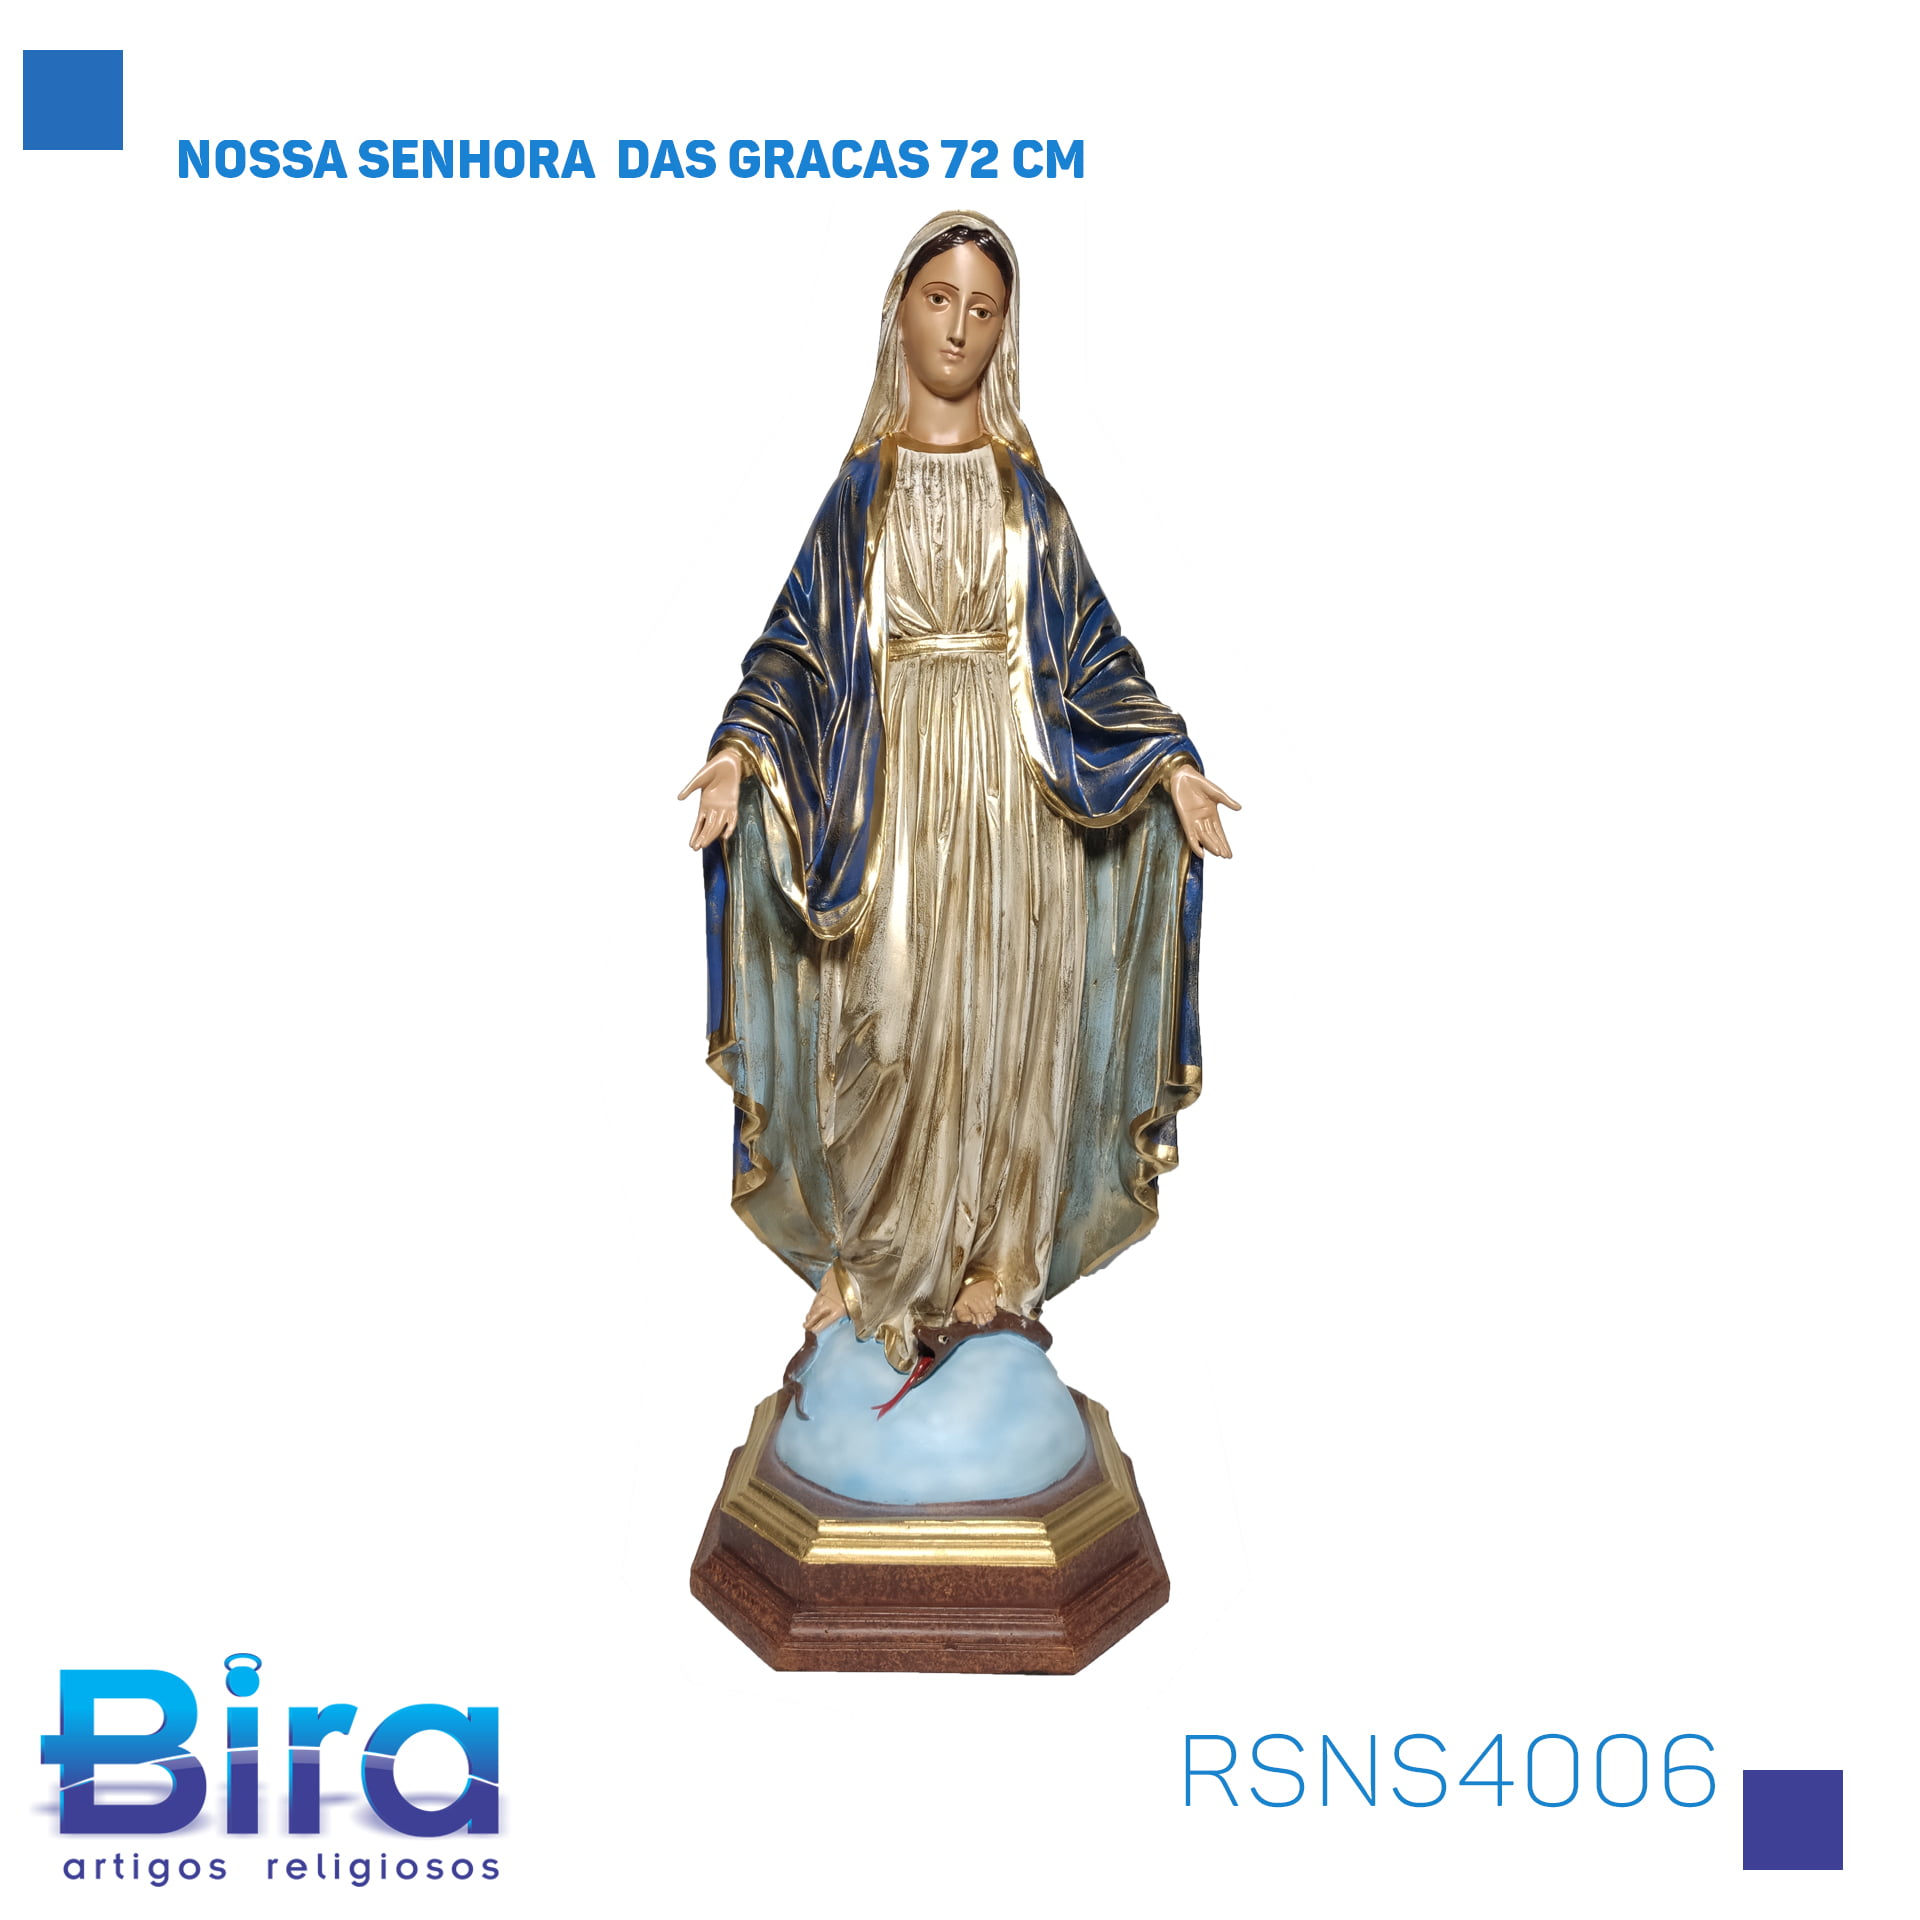 Bira Artigos Religiosos - NOSSA SENHORA DAS GRACAS 72 CM Cód. RSNS4006